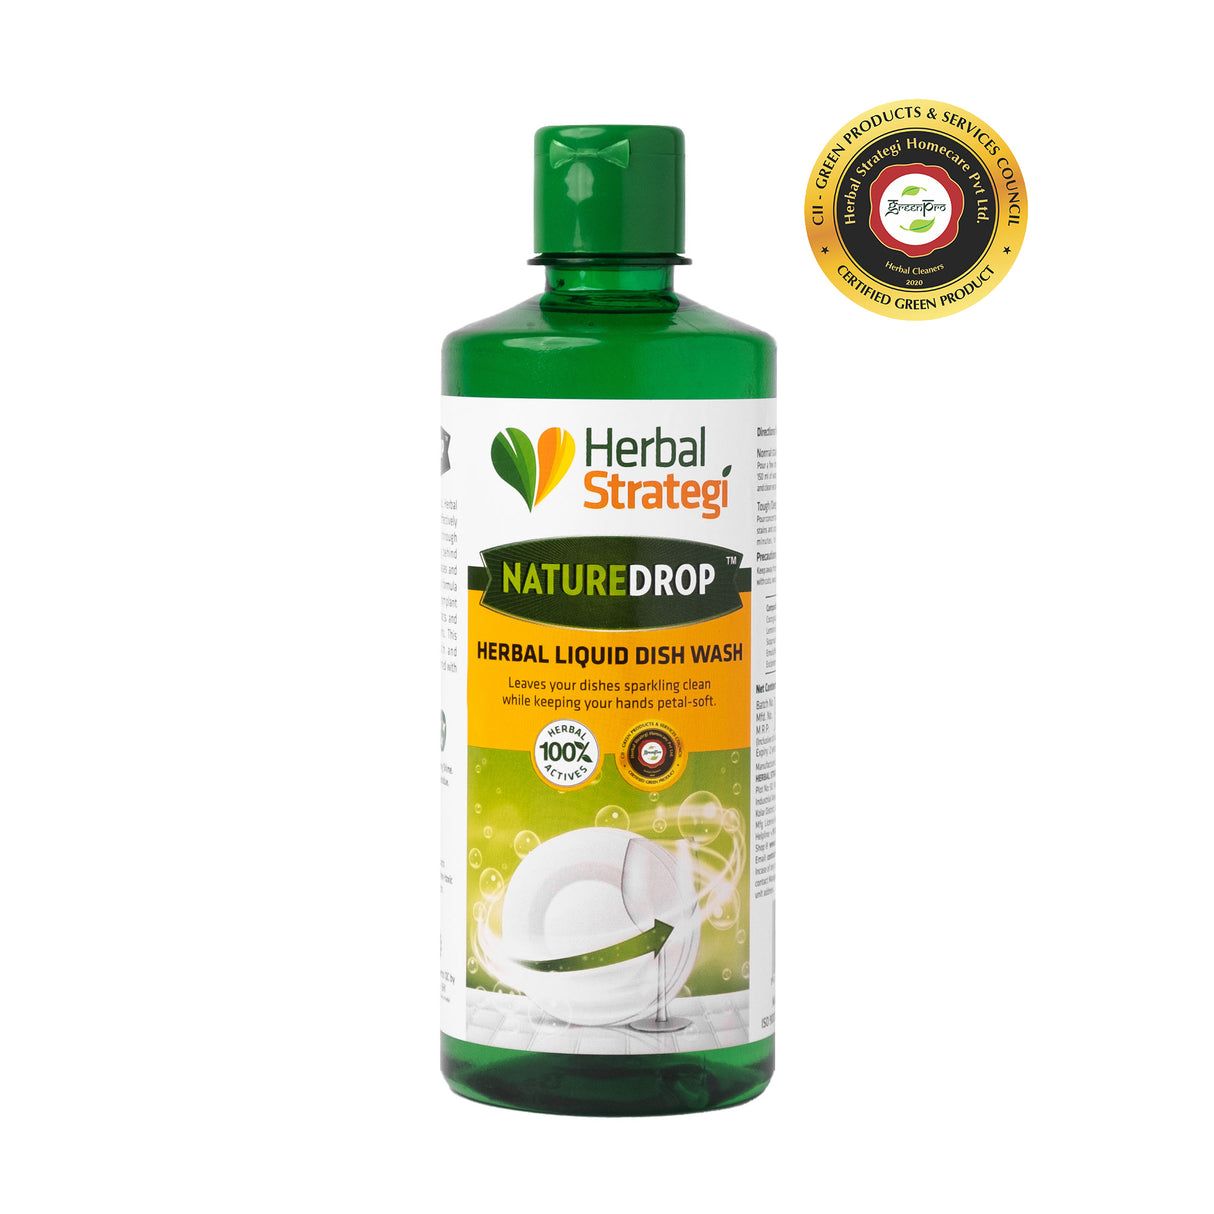 Buy Herbal Floor Cleaner Online - Size 500 ml, 2 ltr, 5 ltr